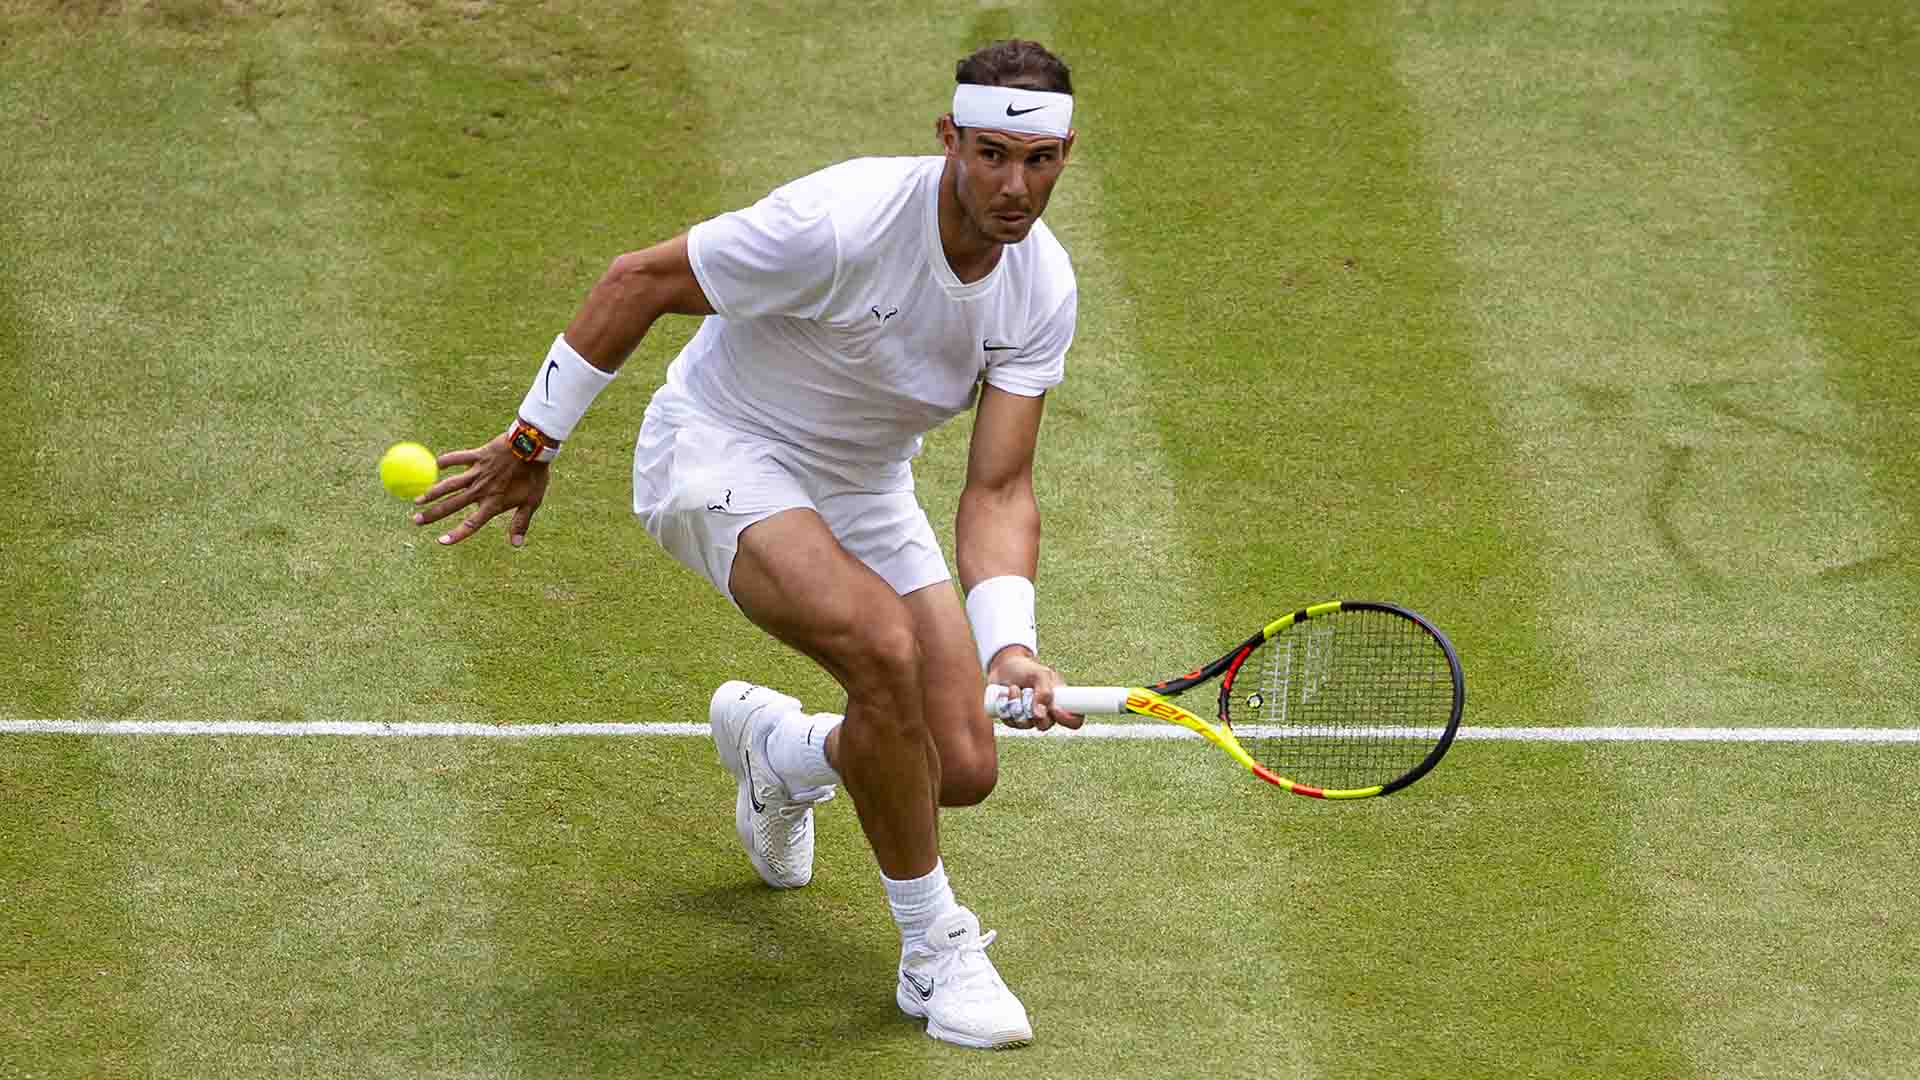 Federer e Nadal protagonizaram melhor partida de todos os tempos no  último confronto em Wimbledon · Revista TÊNIS